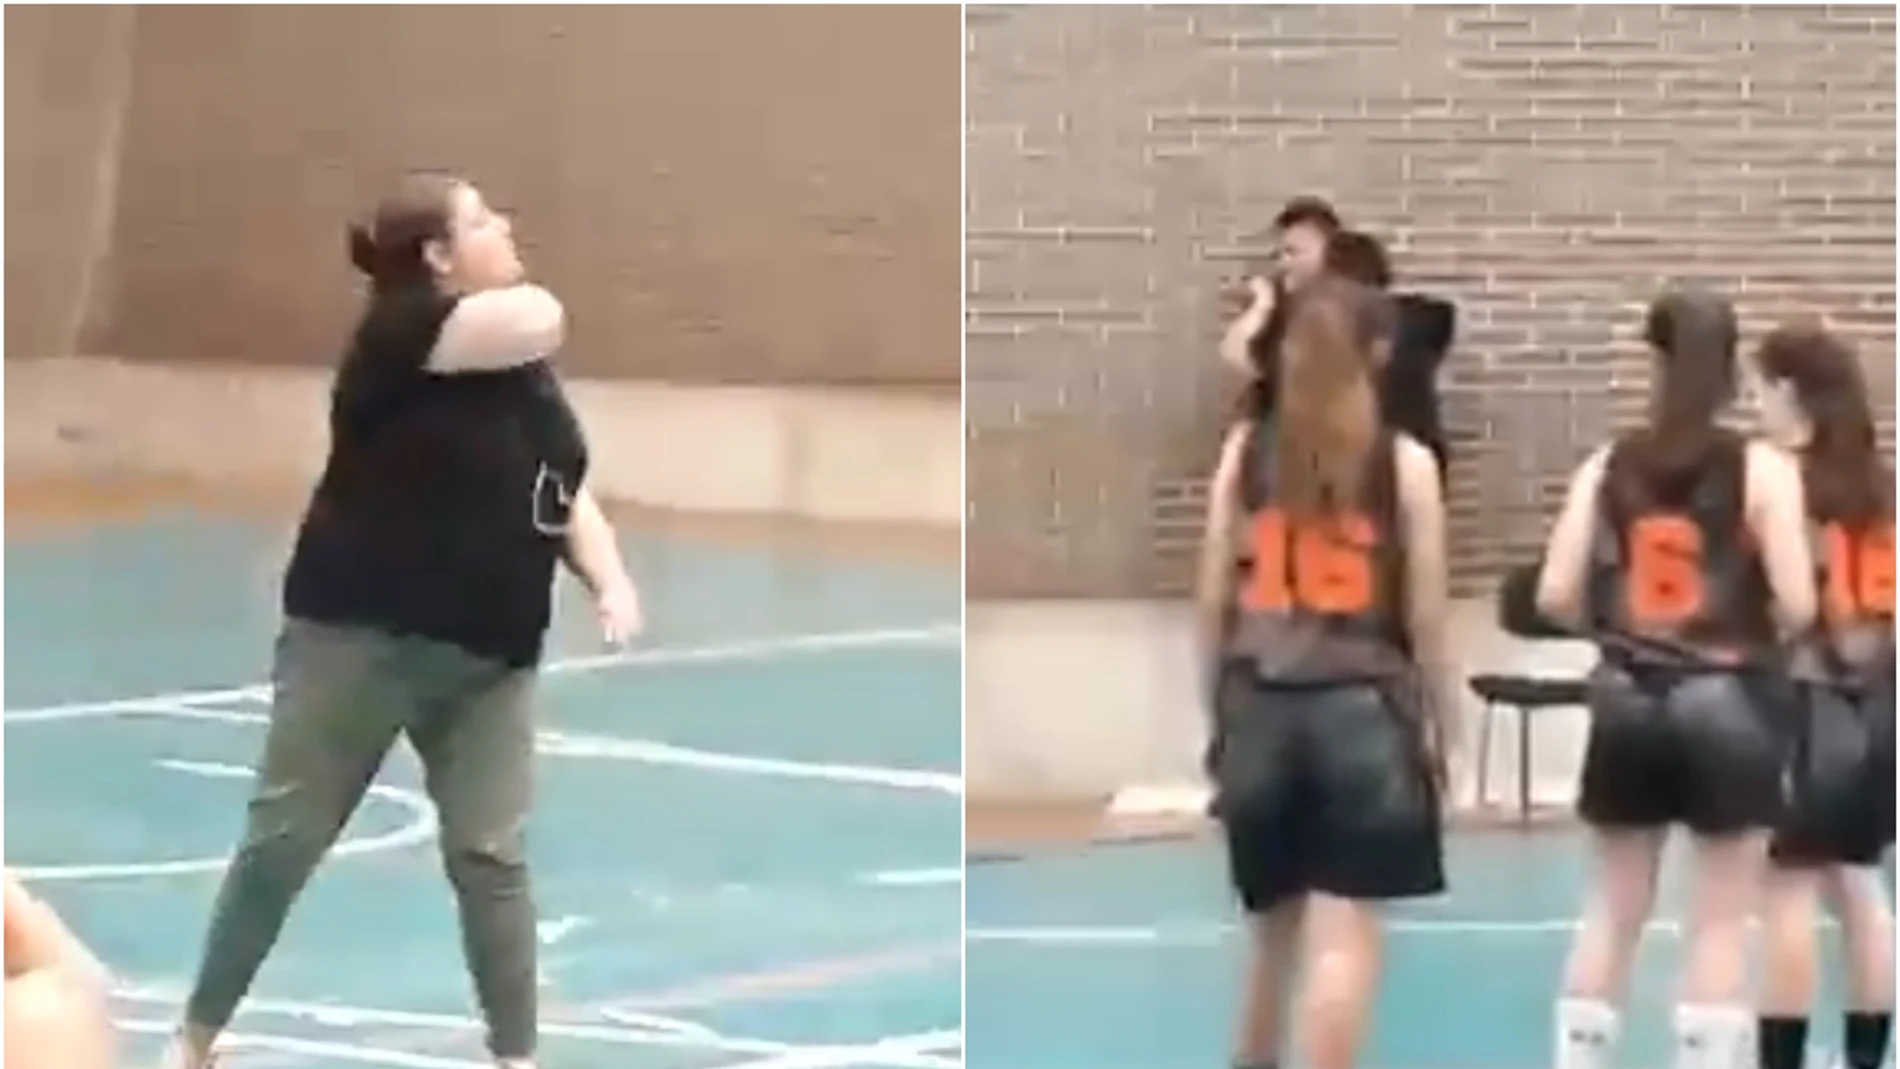 Una mujer amenaza e intenta agredir a un árbitro durante un partido de cadetes